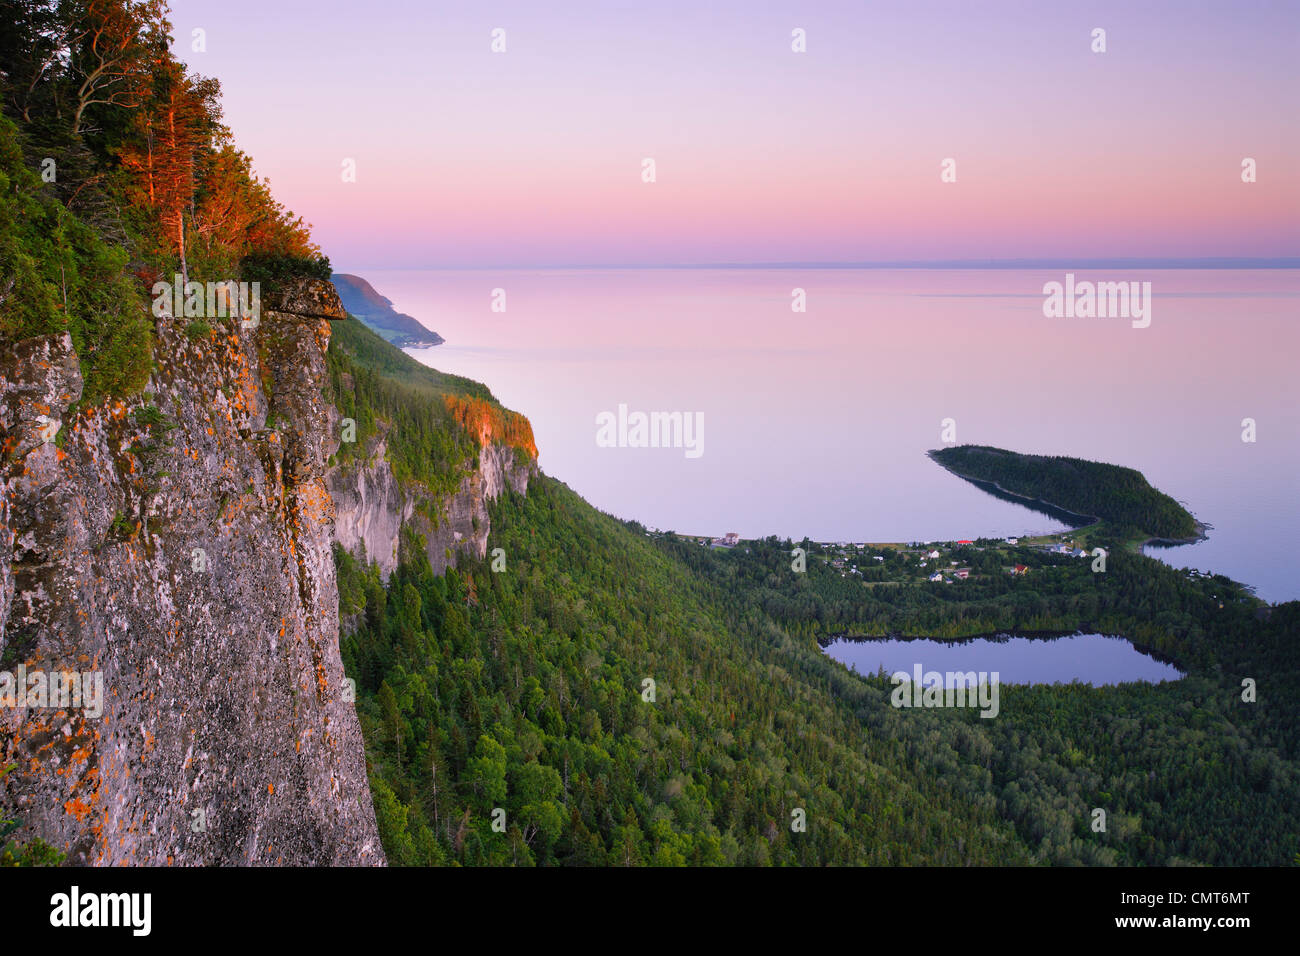 Cliff, Saint-Fabien-sur-Mer and St. Lawrence River at Sunrise, Bas-Saint-Laurent  Region, Bic National Park, Quebec Stock Photo - Alamy